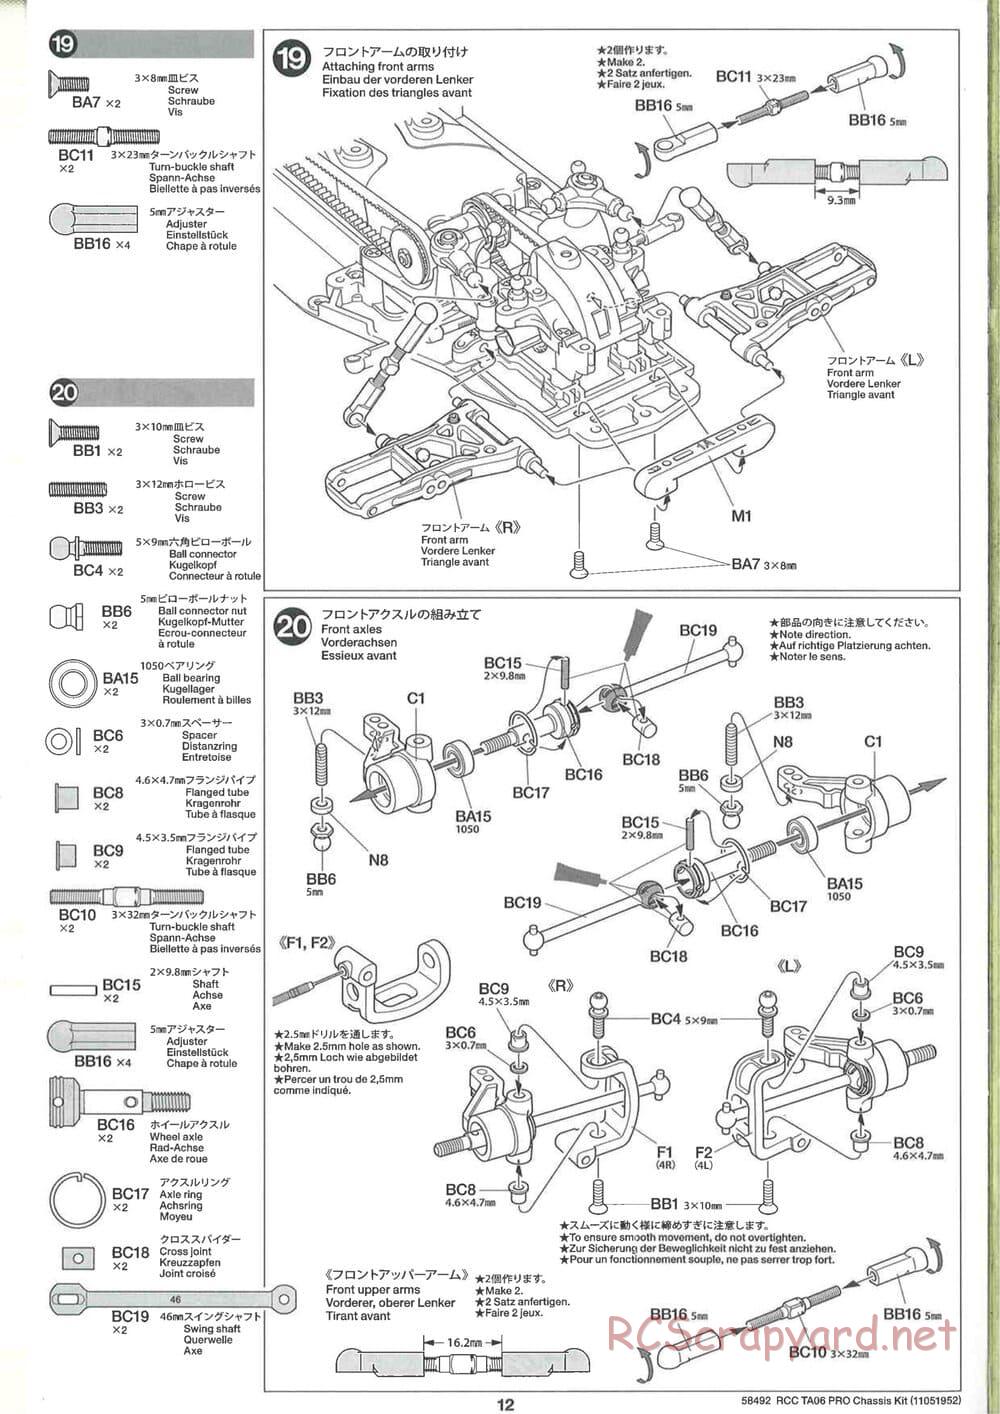 Tamiya - TA06 Pro Chassis - Manual - Page 12